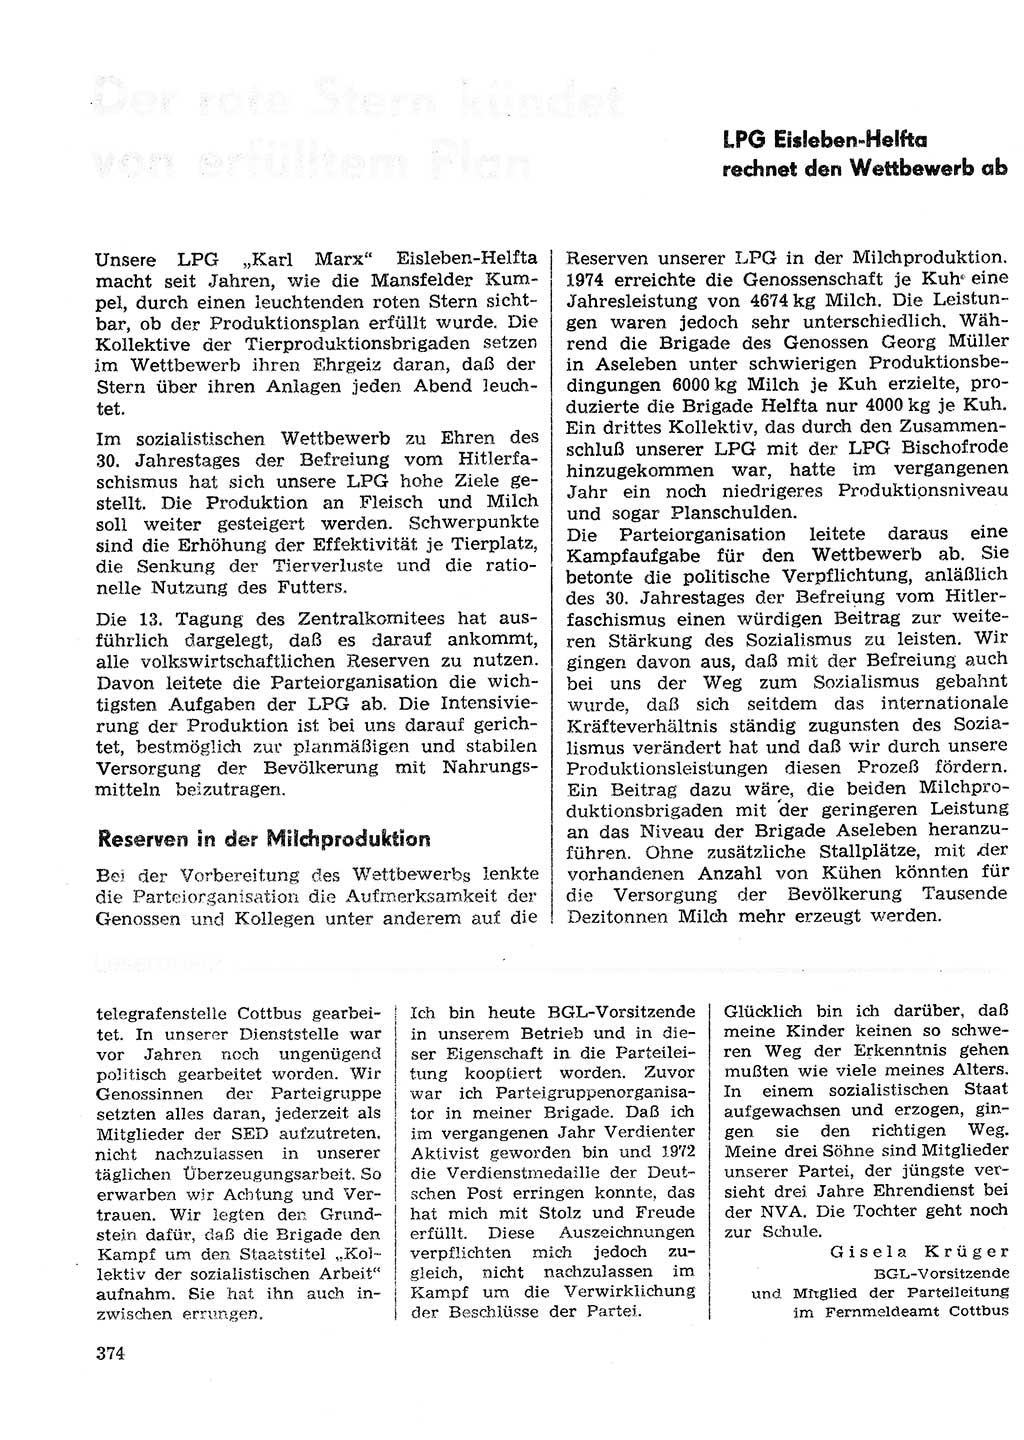 Neuer Weg (NW), Organ des Zentralkomitees (ZK) der SED (Sozialistische Einheitspartei Deutschlands) für Fragen des Parteilebens, 30. Jahrgang [Deutsche Demokratische Republik (DDR)] 1975, Seite 374 (NW ZK SED DDR 1975, S. 374)